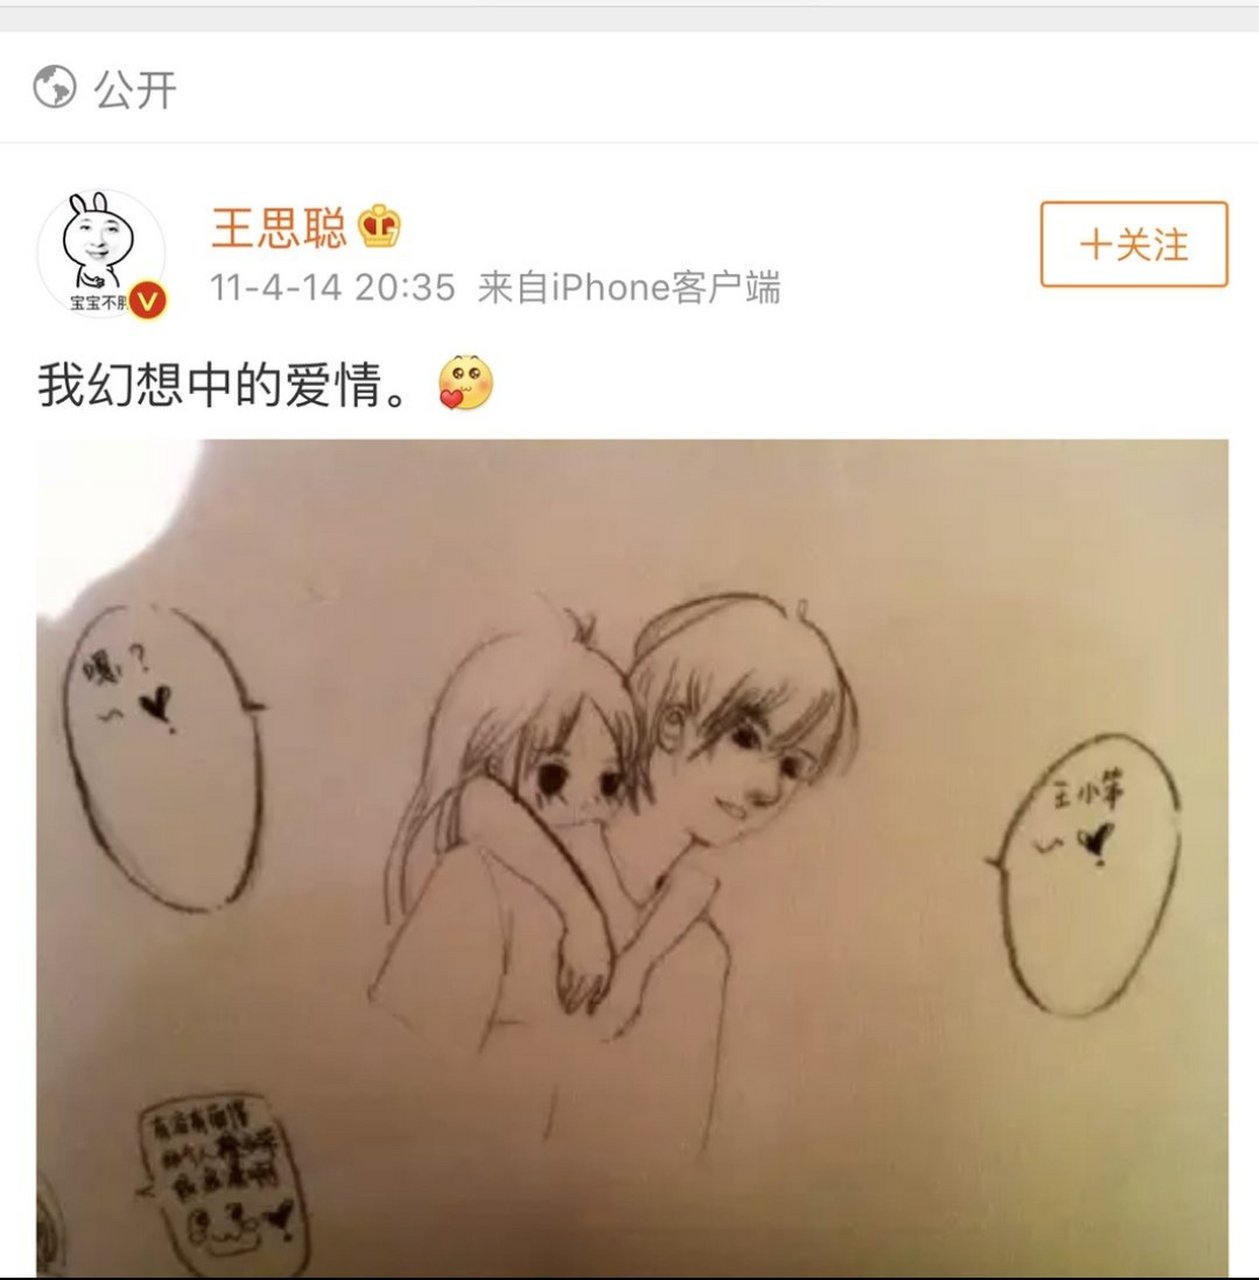 2011年,王思聪幻想中的爱情,配图是一幅简笔画,画中女孩从背后深情的